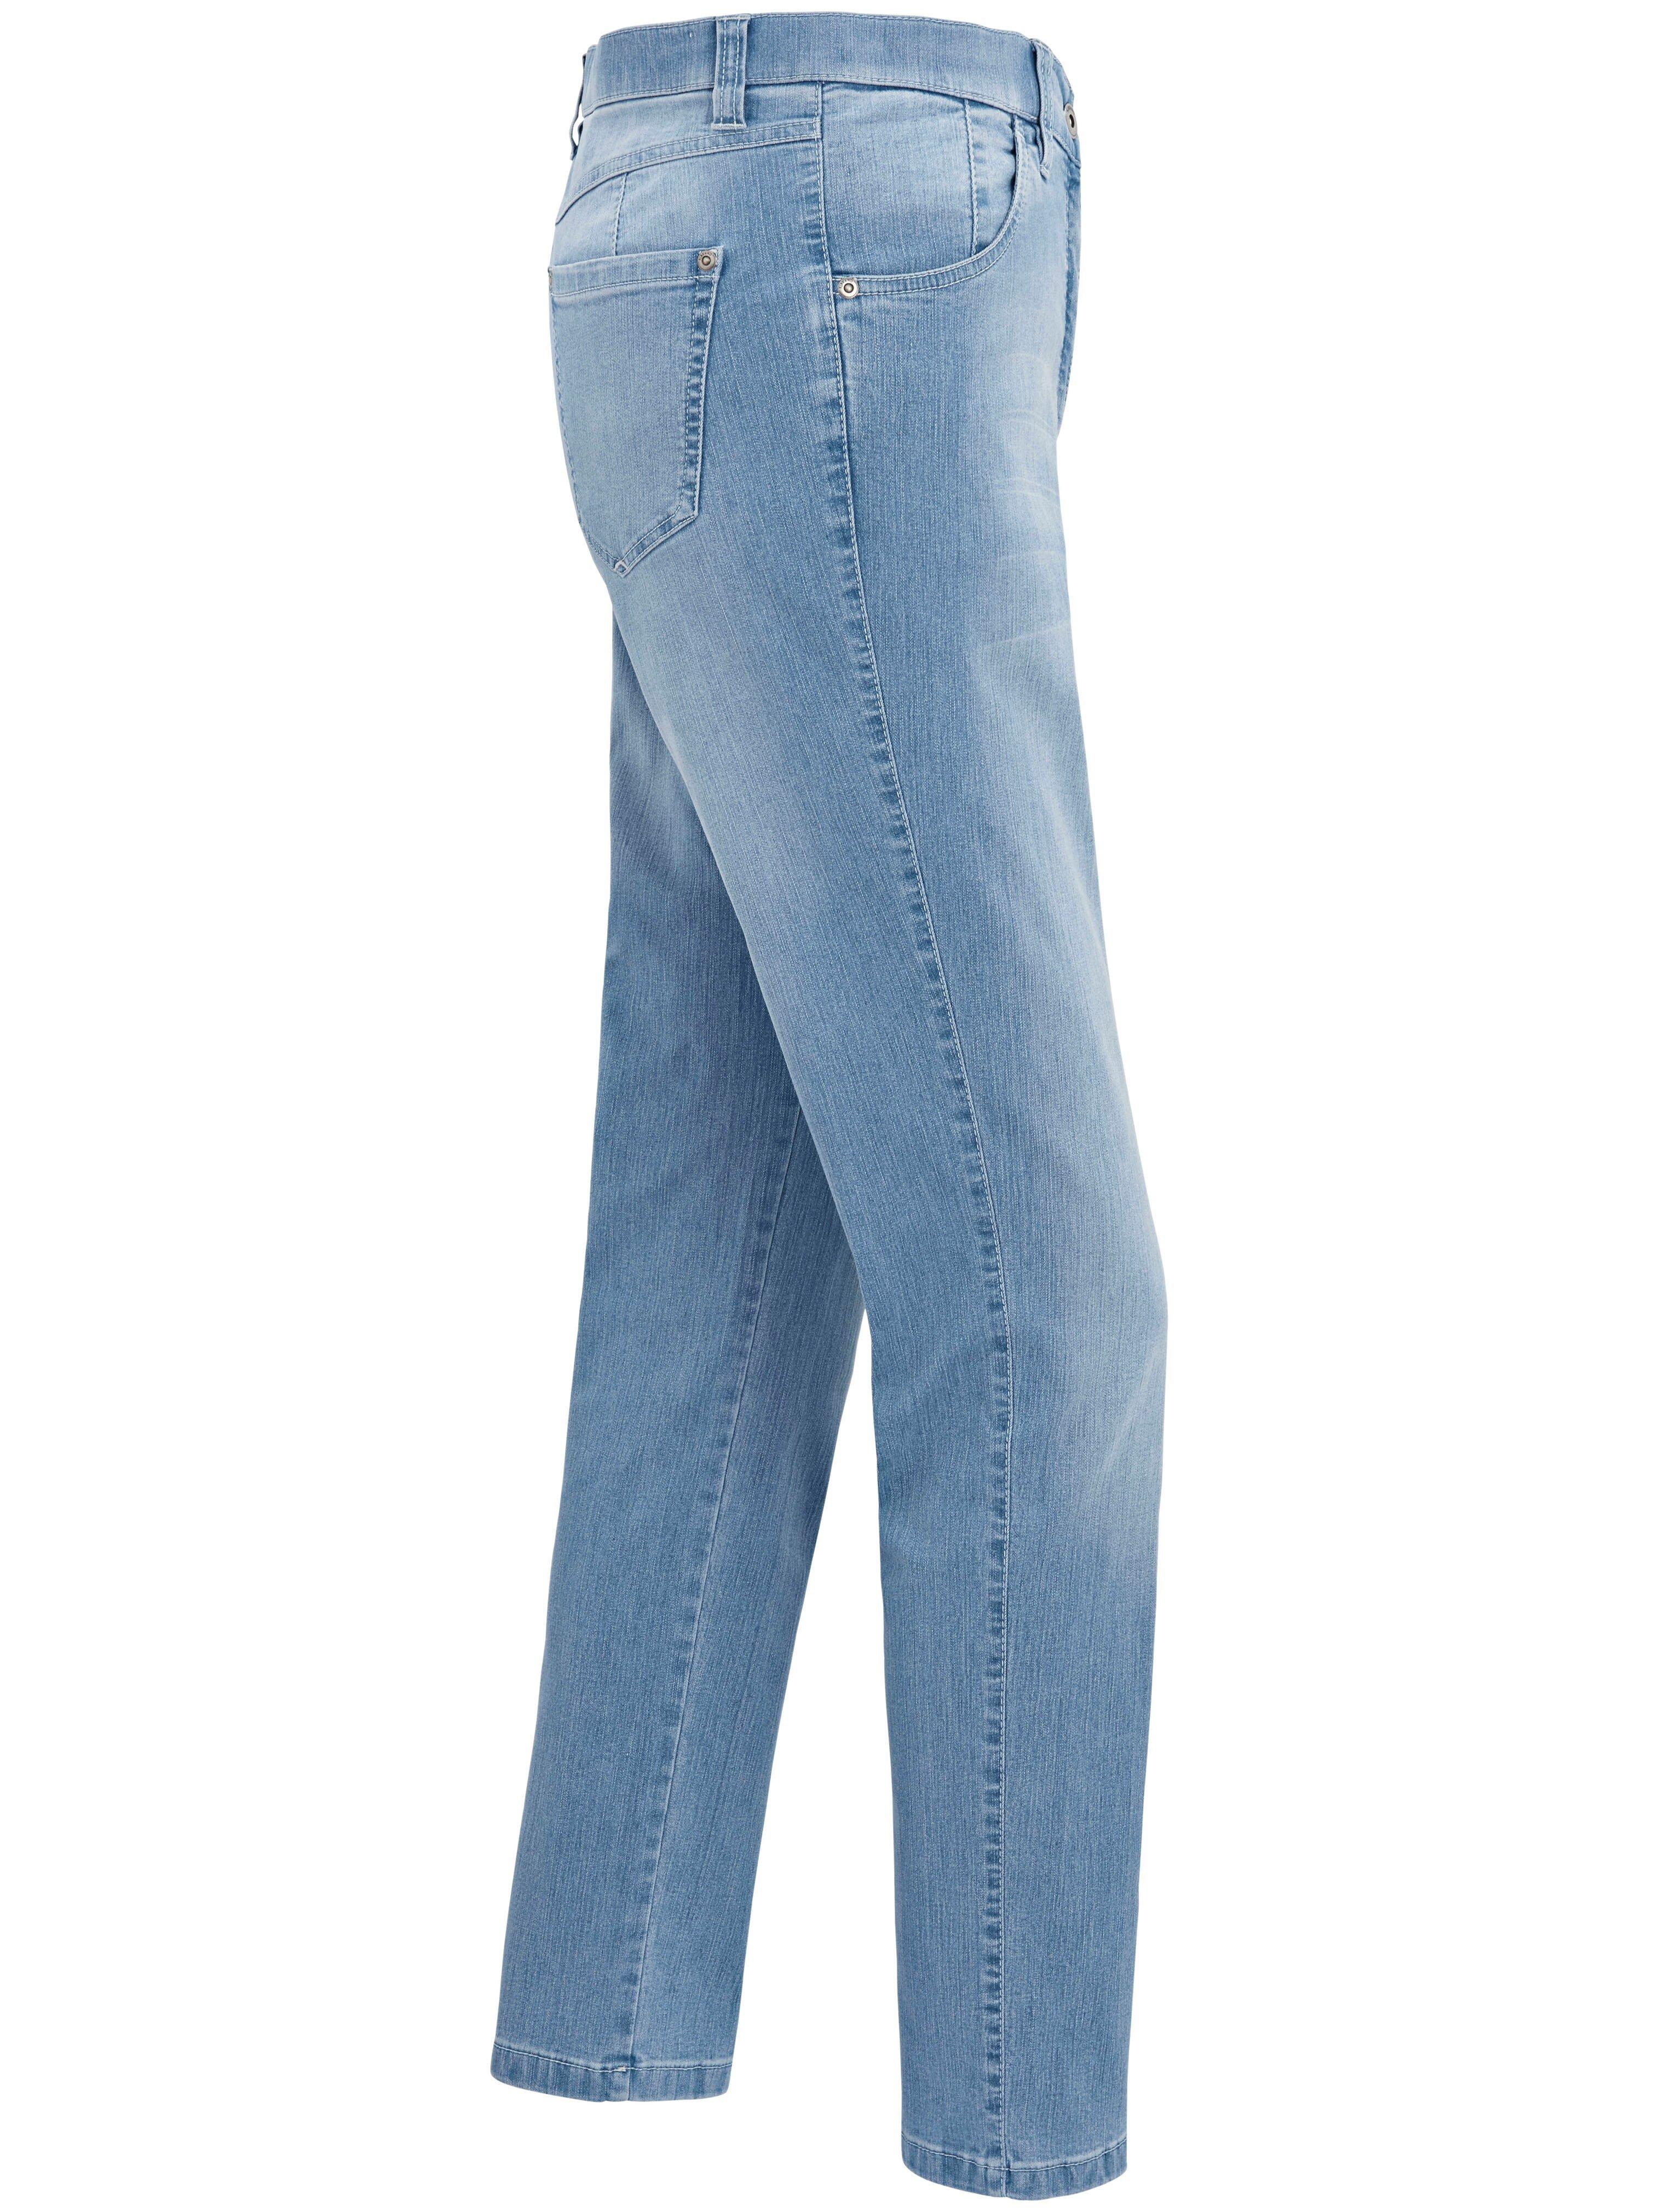 KjBrand - Jeans Modell denim Bleached - BETTY CS